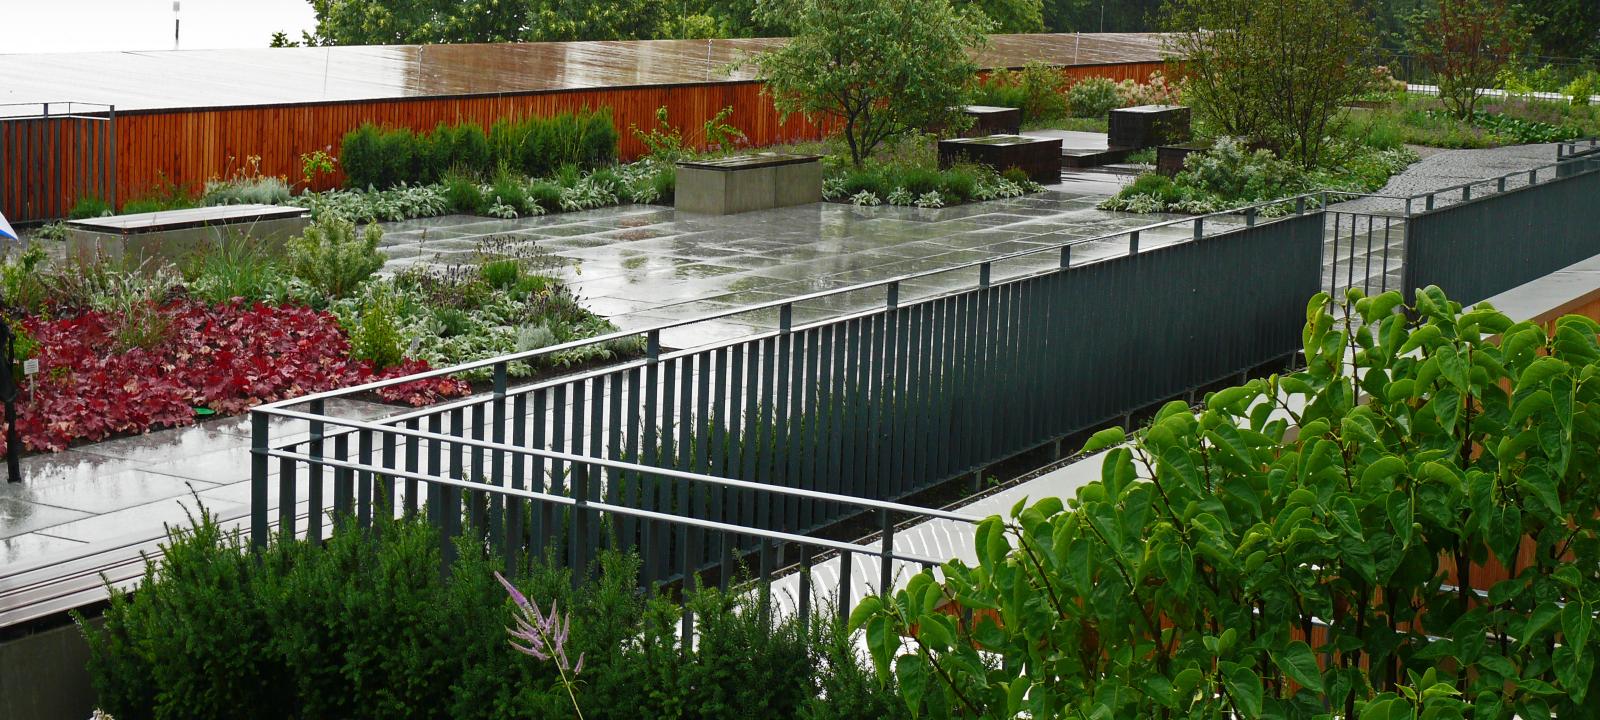 Roof garden during rainfall